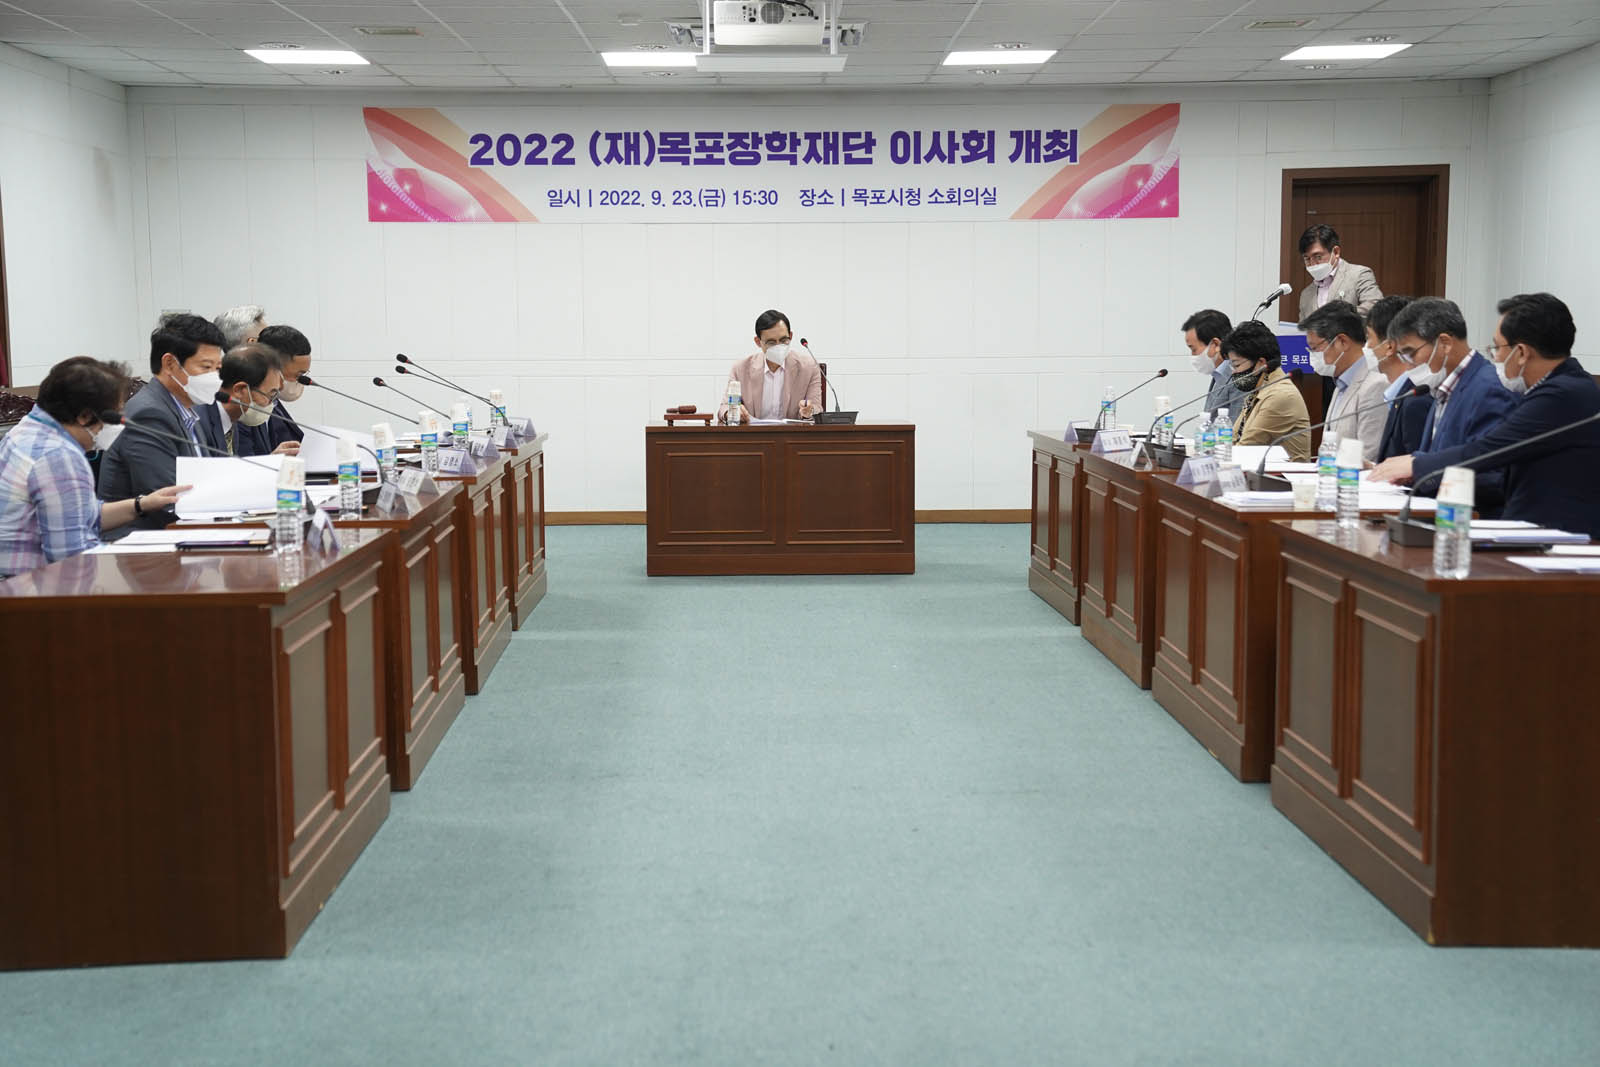 (09.23.소회의실) 장학재단 임시 이사회의